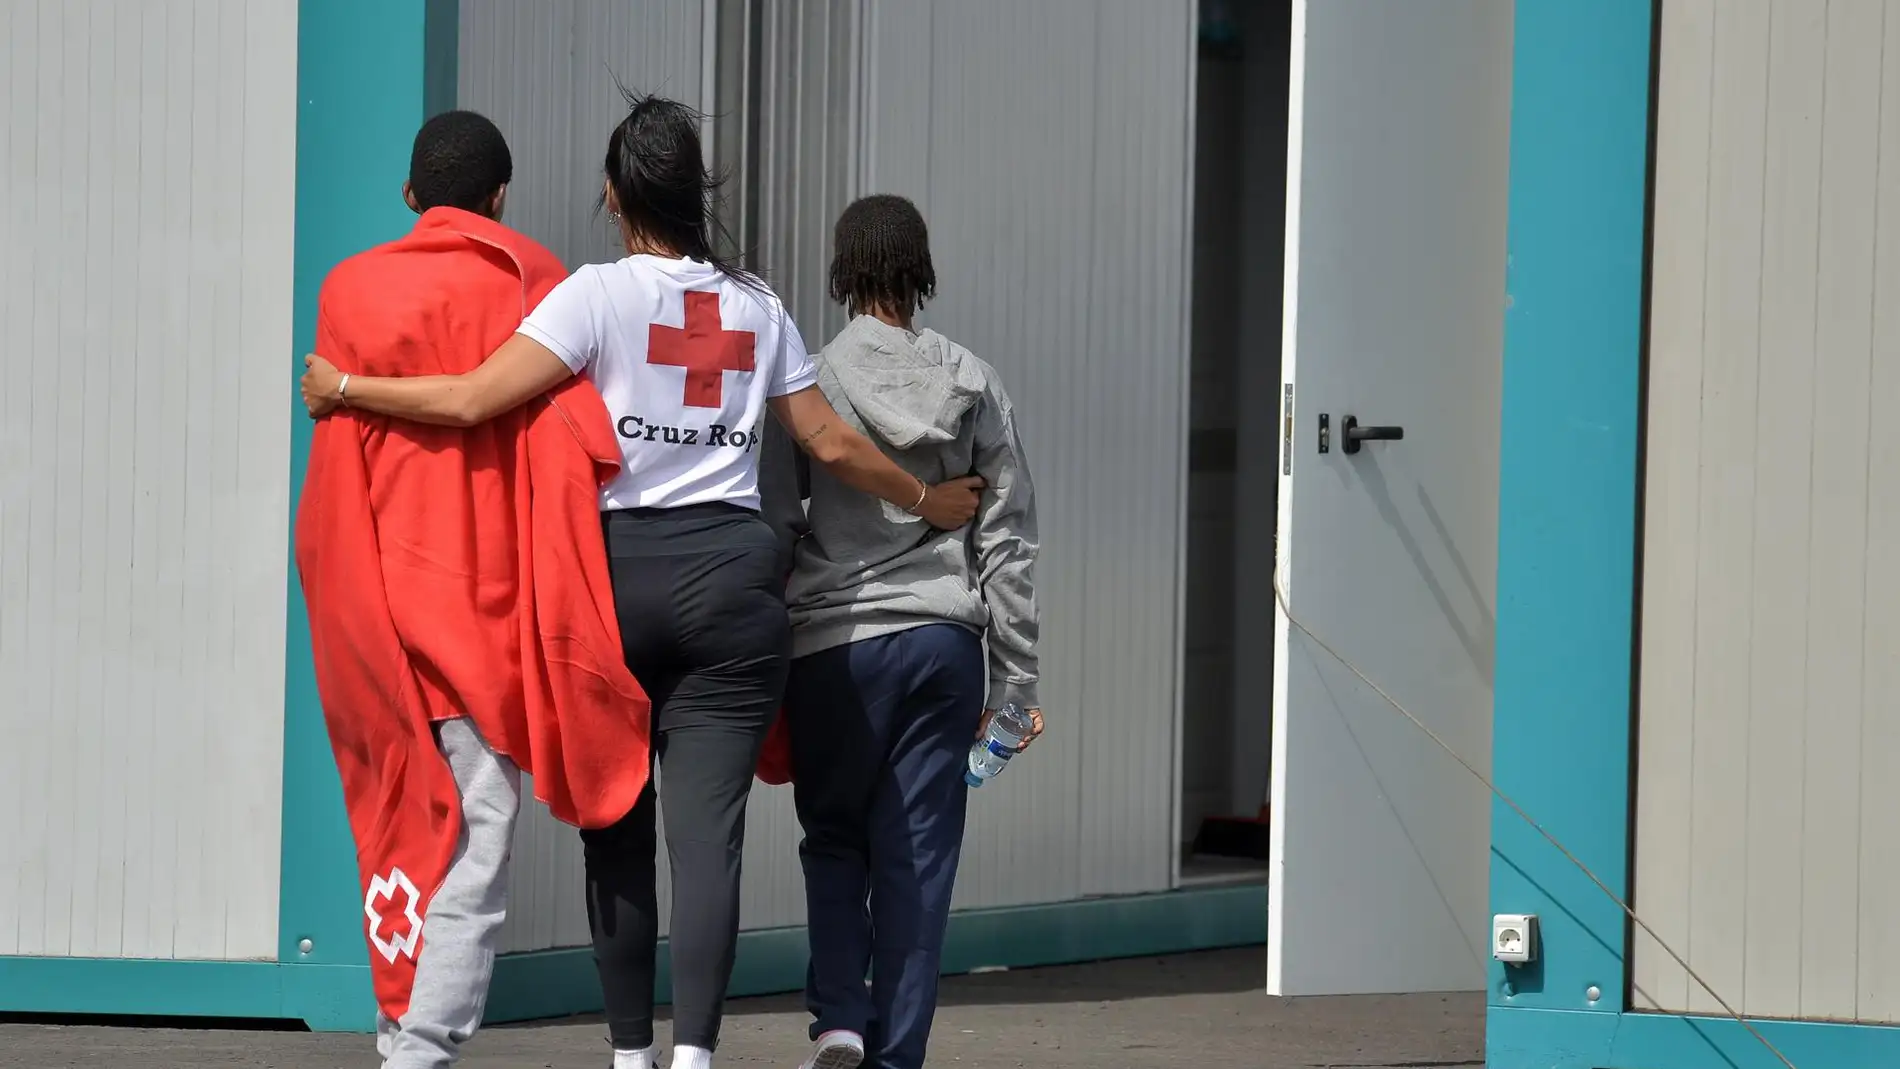 Cruz Roja atiende a los 51 migrantes rescatados en El Hierro, entre ellos una niña de 2 años que finalmente ha fallecido